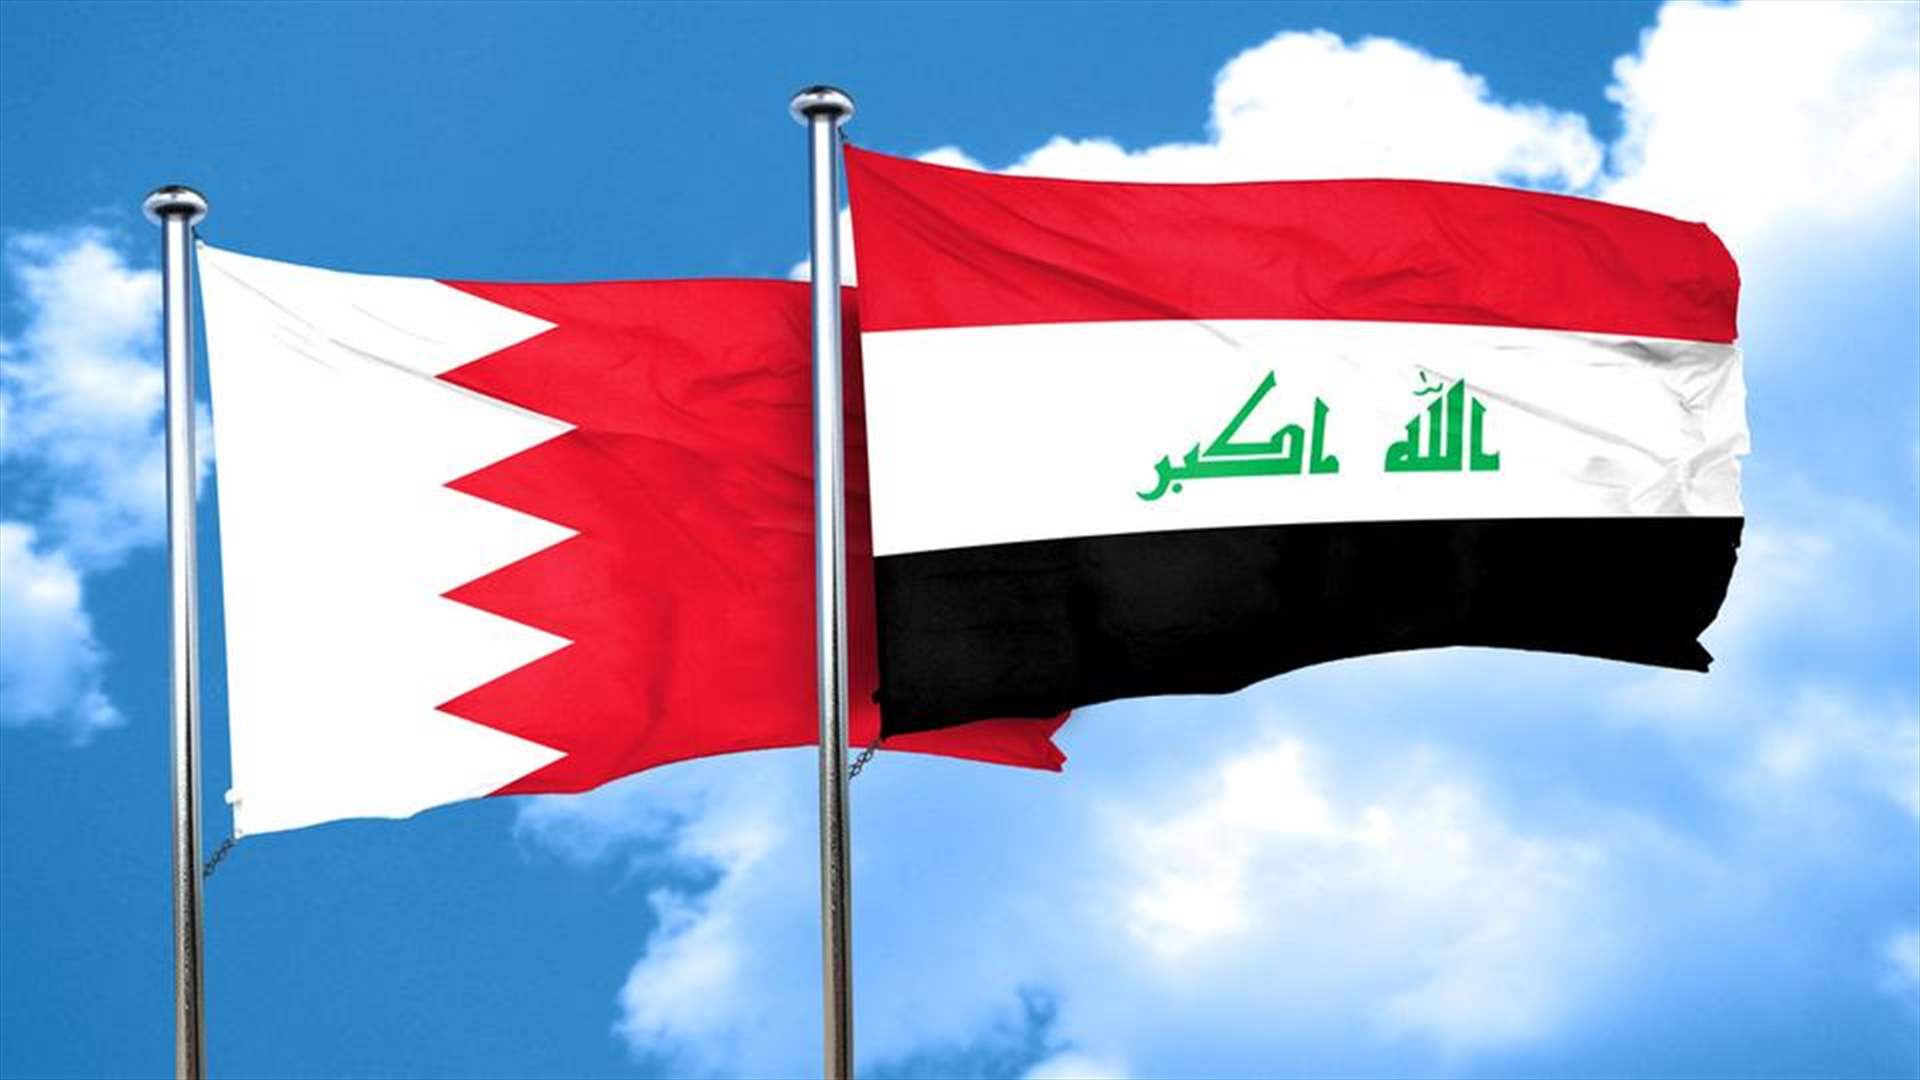 غداة استدعاء الخارجية البحرينية القائم بالأعمال العراقي... اتّصال هاتفي بين وزيري خارجية البلدين